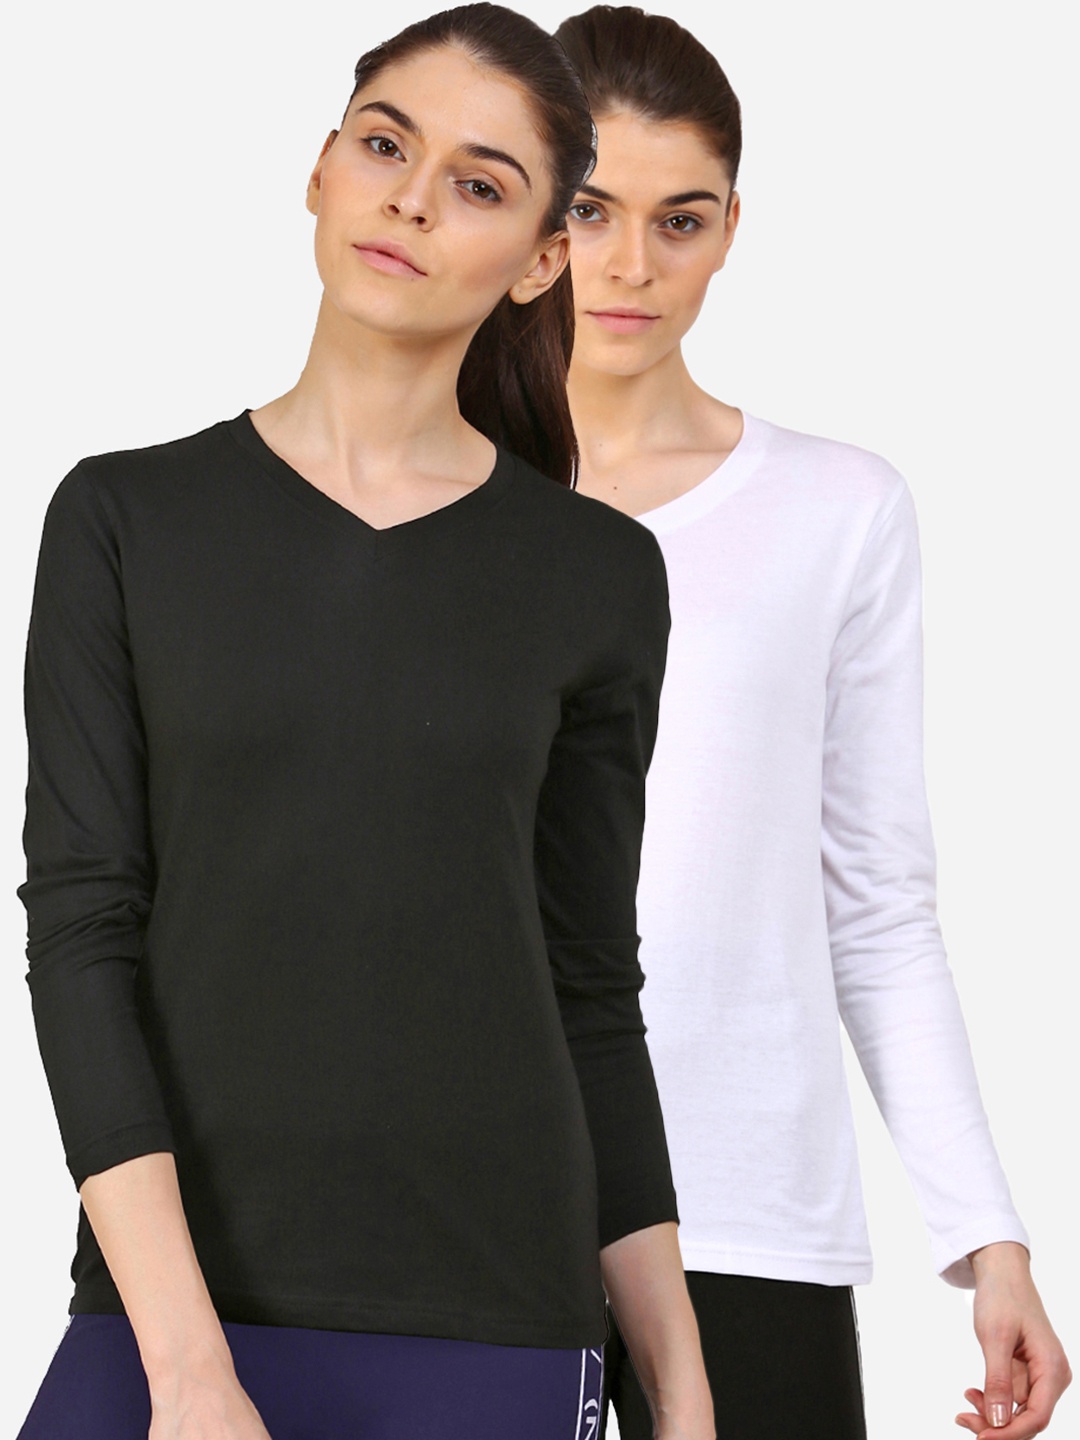 

appulse Women Black & White Pack Of 2 V-Neck Slim Fit Running T-shirt